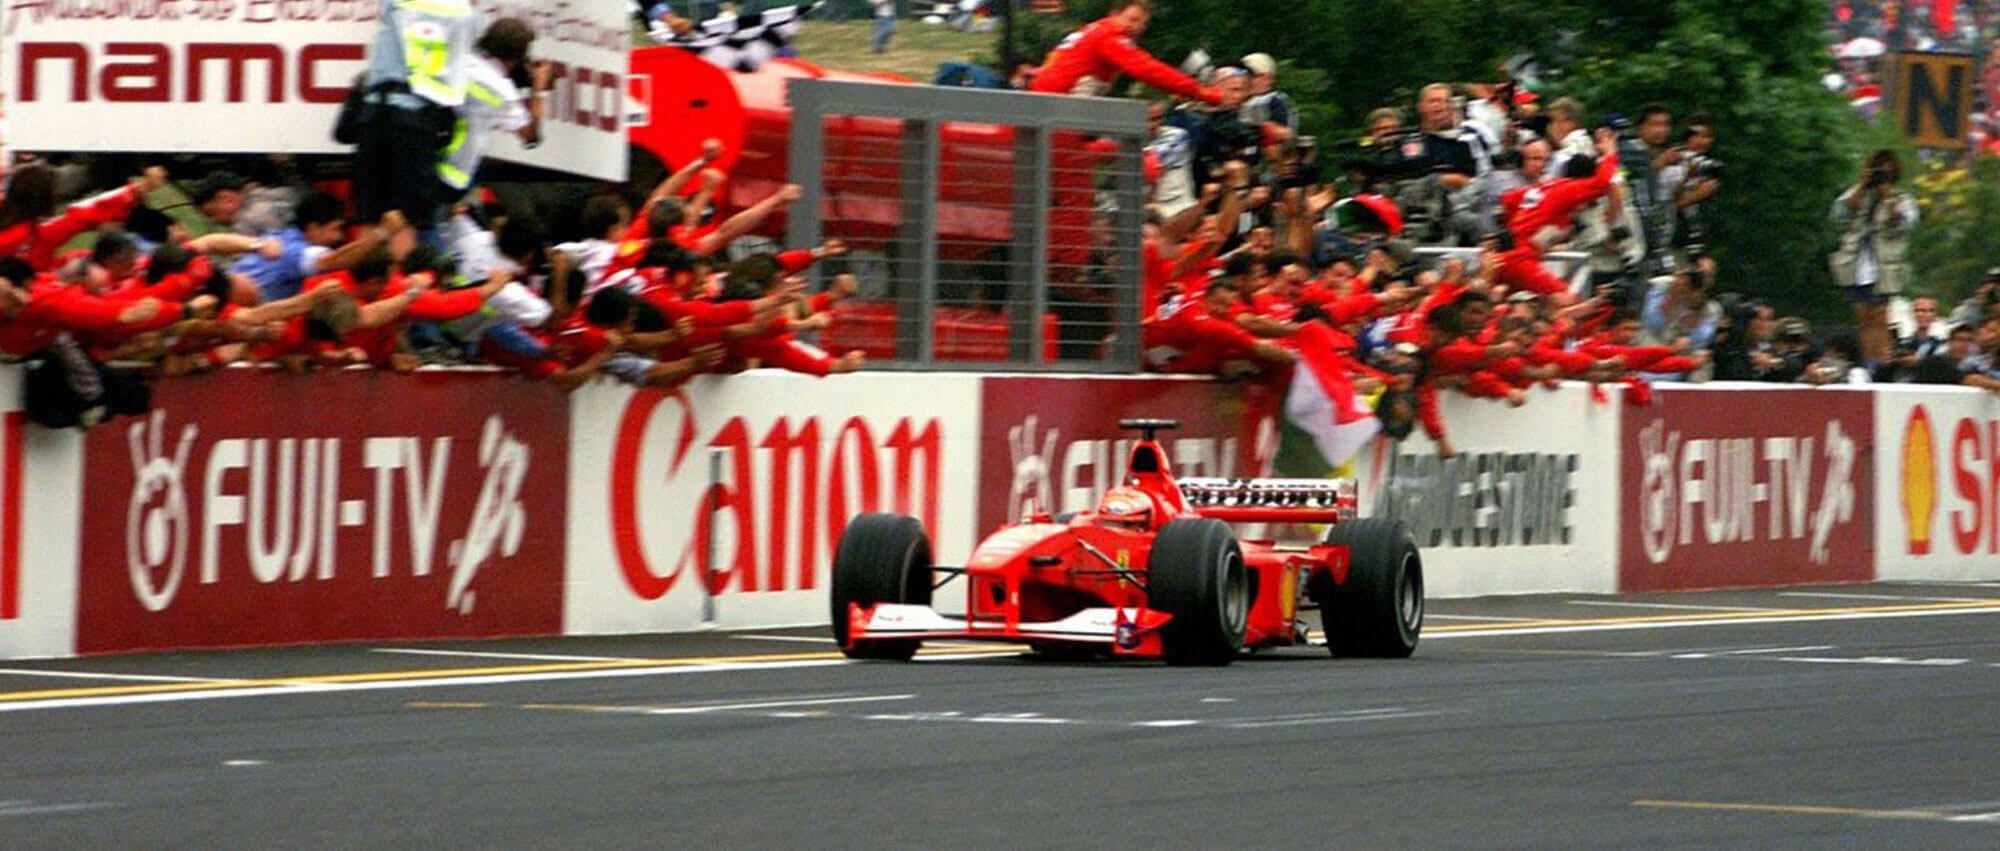 Michael Schumacher Wins World Title At Suzuka, 2000